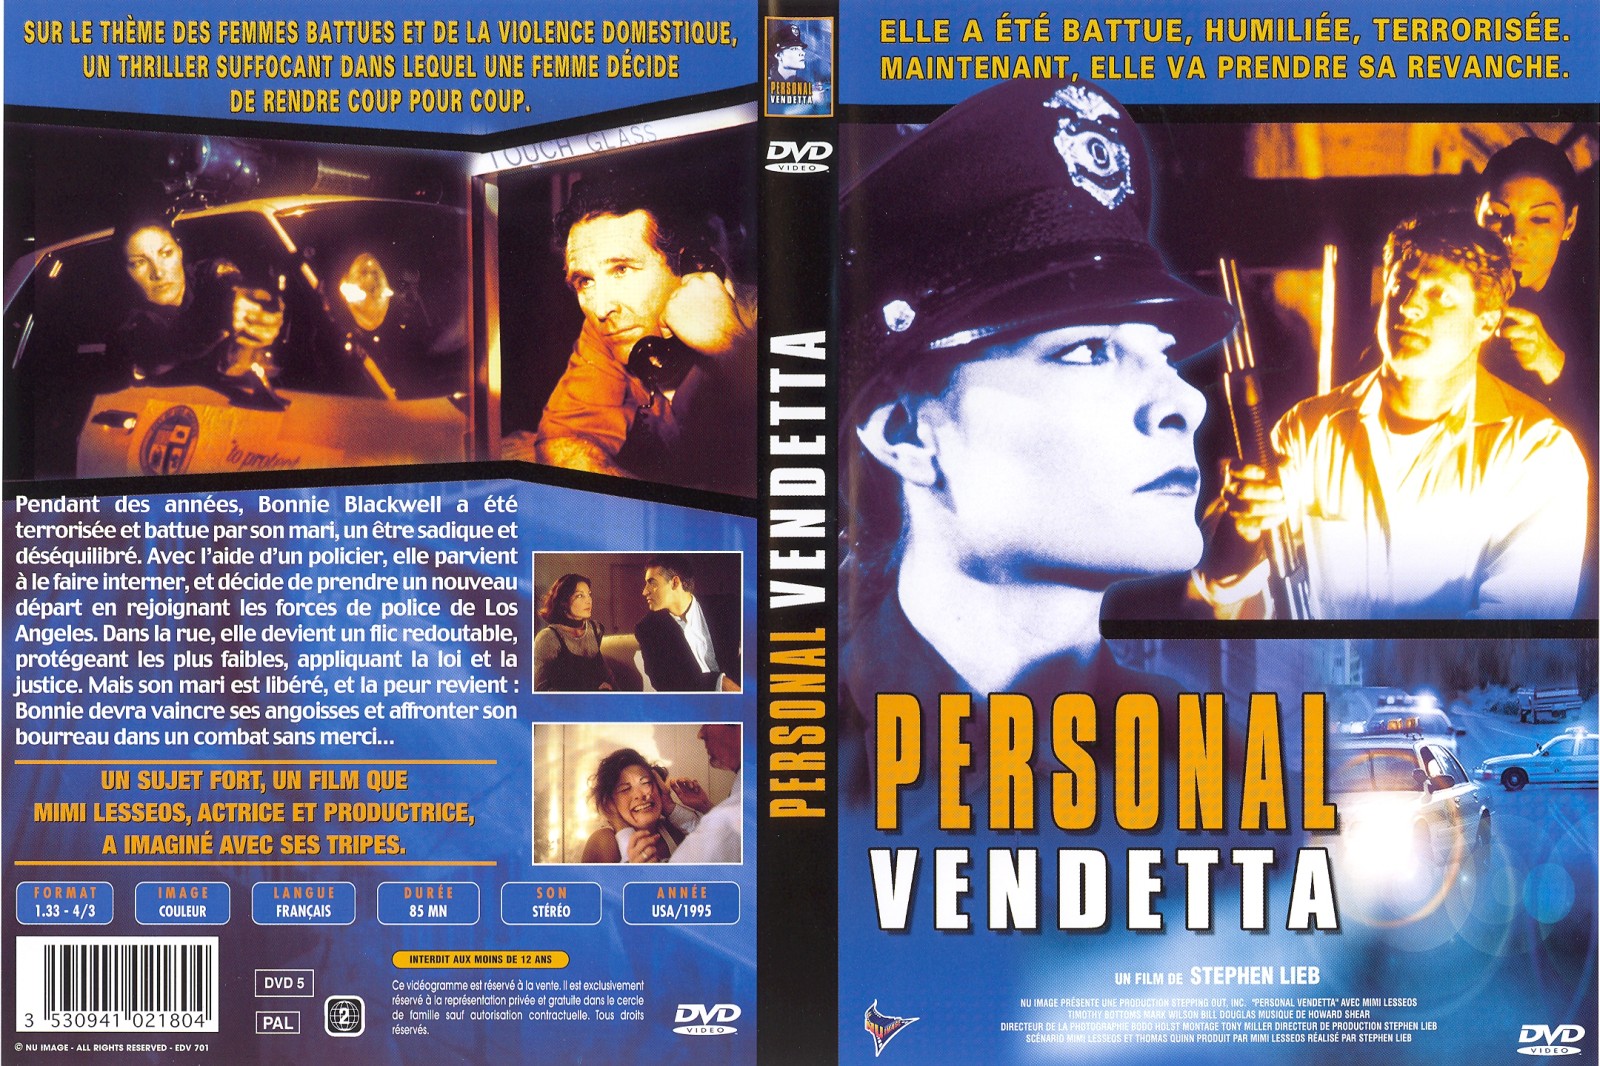 Jaquette DVD Personal Vendetta